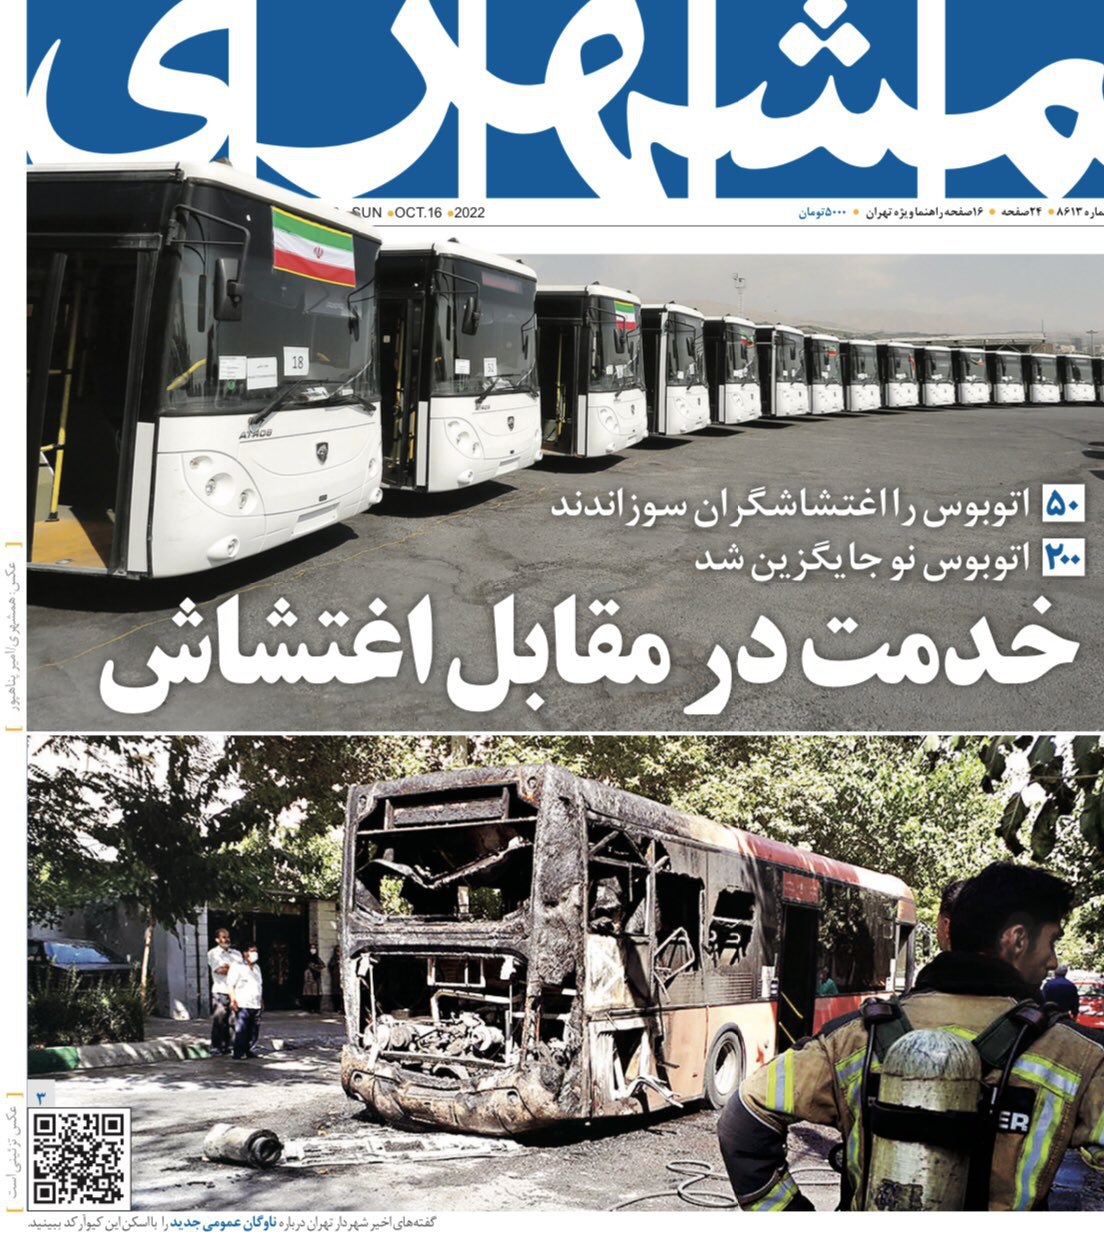 گاف جنجال برانگیز رسانه شهرداری تهران